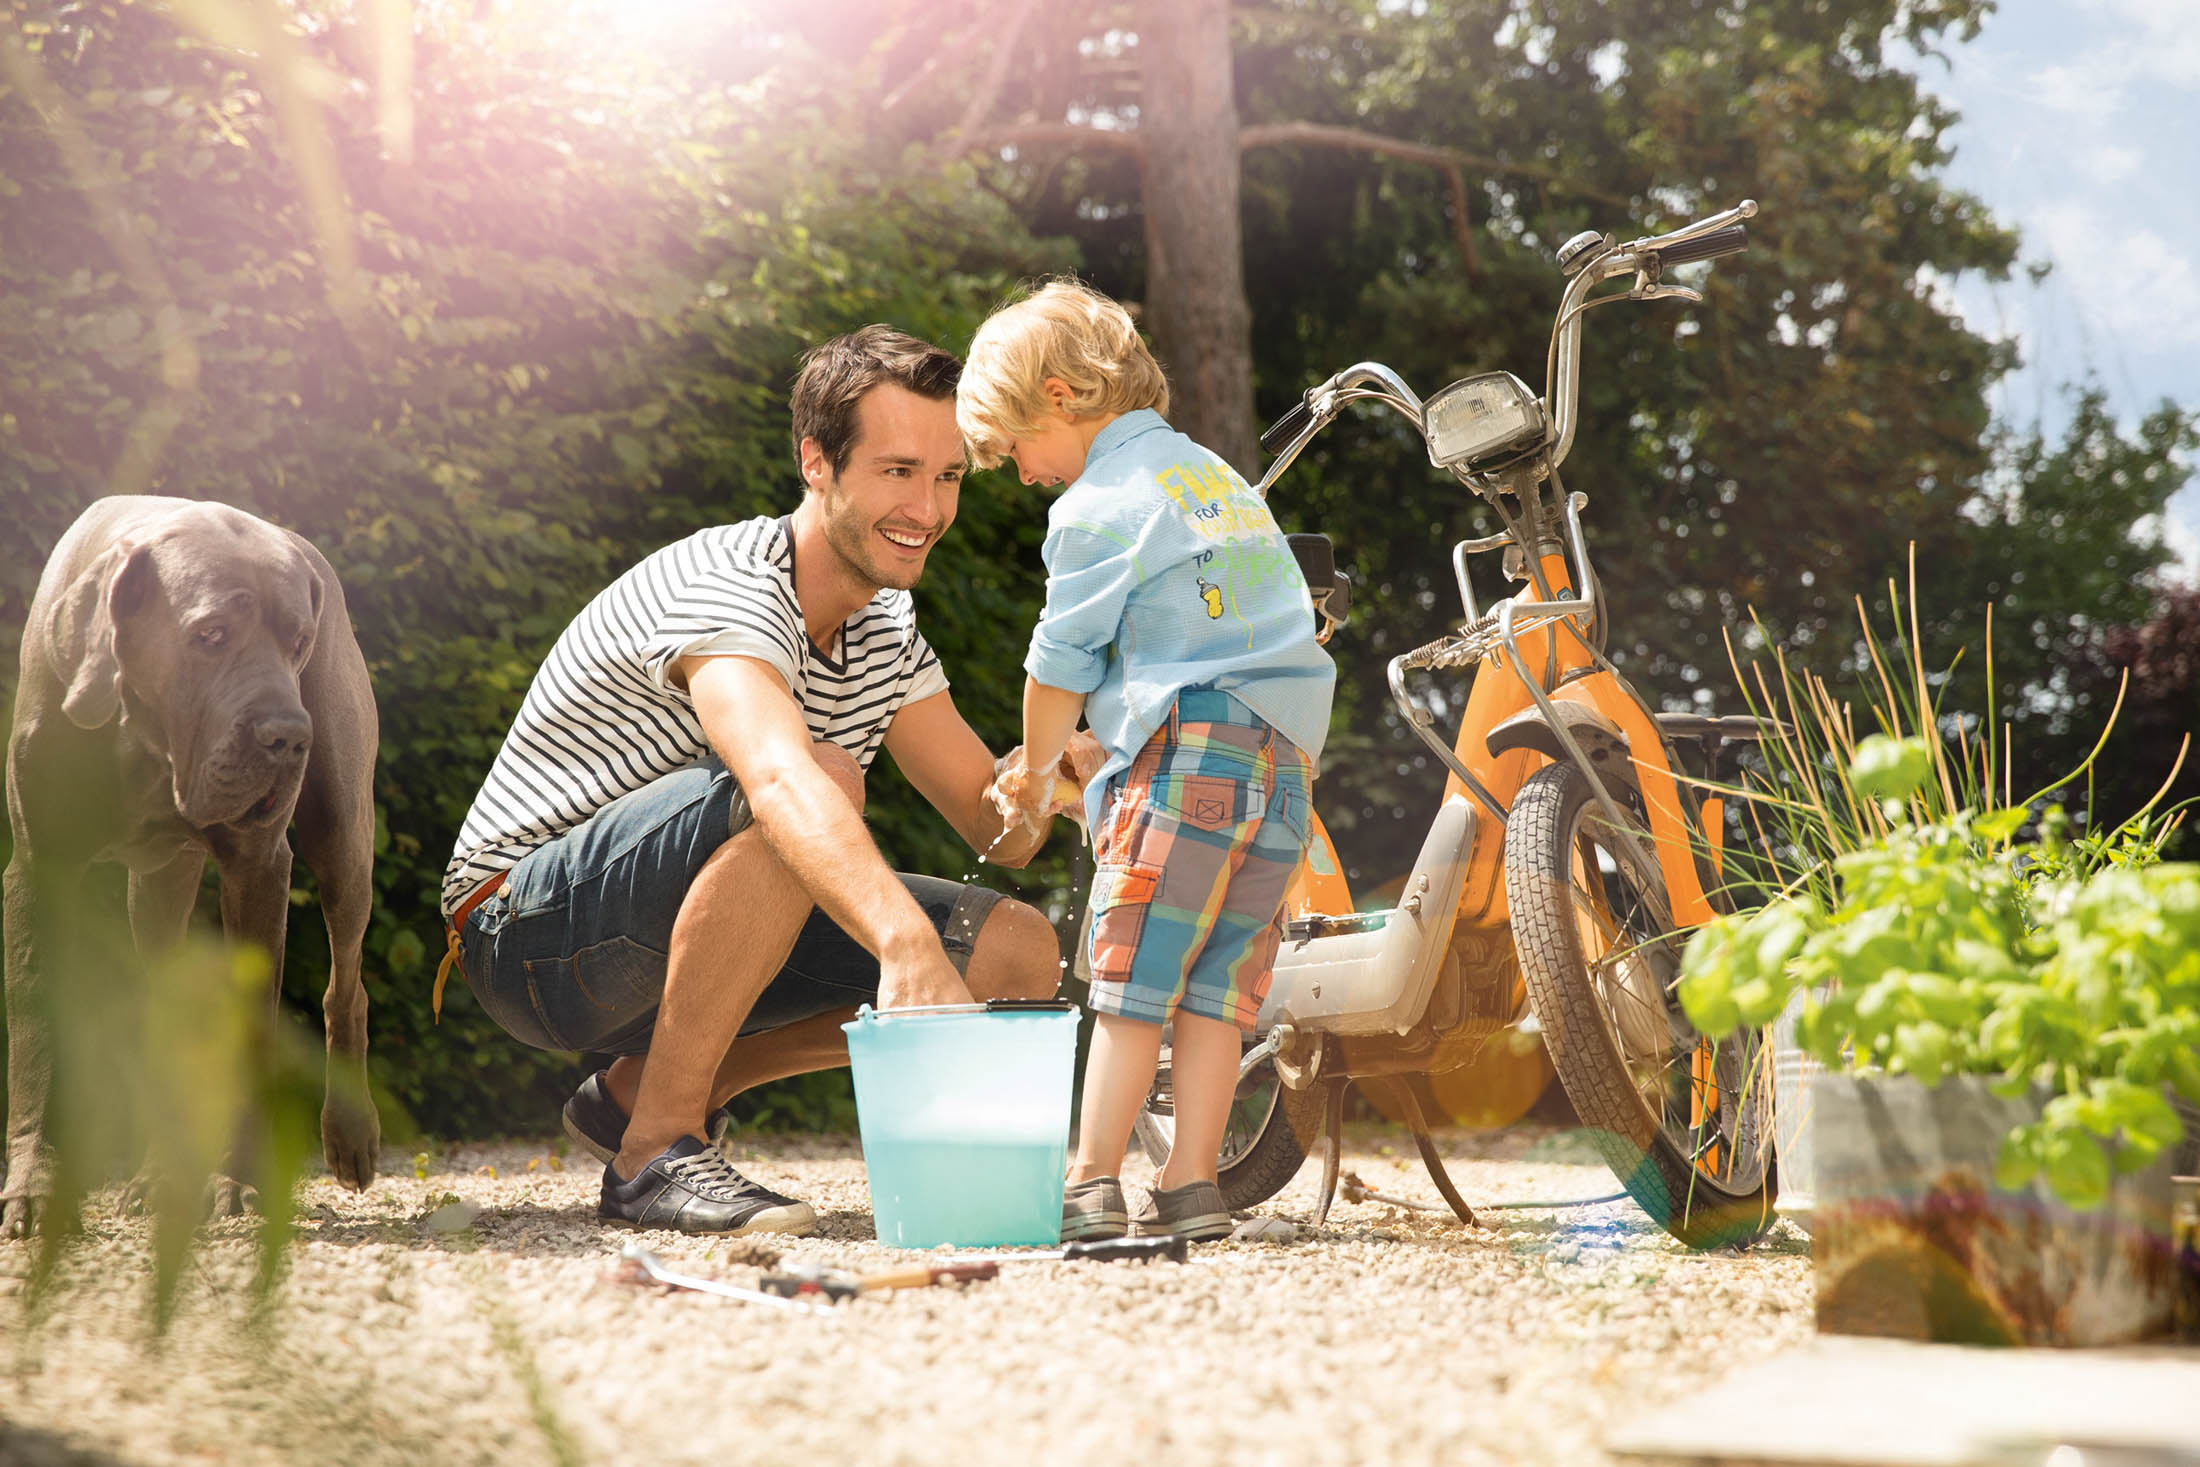 Ein Mann und ein kleines Kind waschen in einem sonnigen Garten ein Fahrrad. Ein Hund steht daneben. Der Mann lächelt das Kind an, das einen Schwamm über einen Eimer hält. Sonnenflecken fallen durch das üppige Grün. © Fotografie Tomas Rodriguez